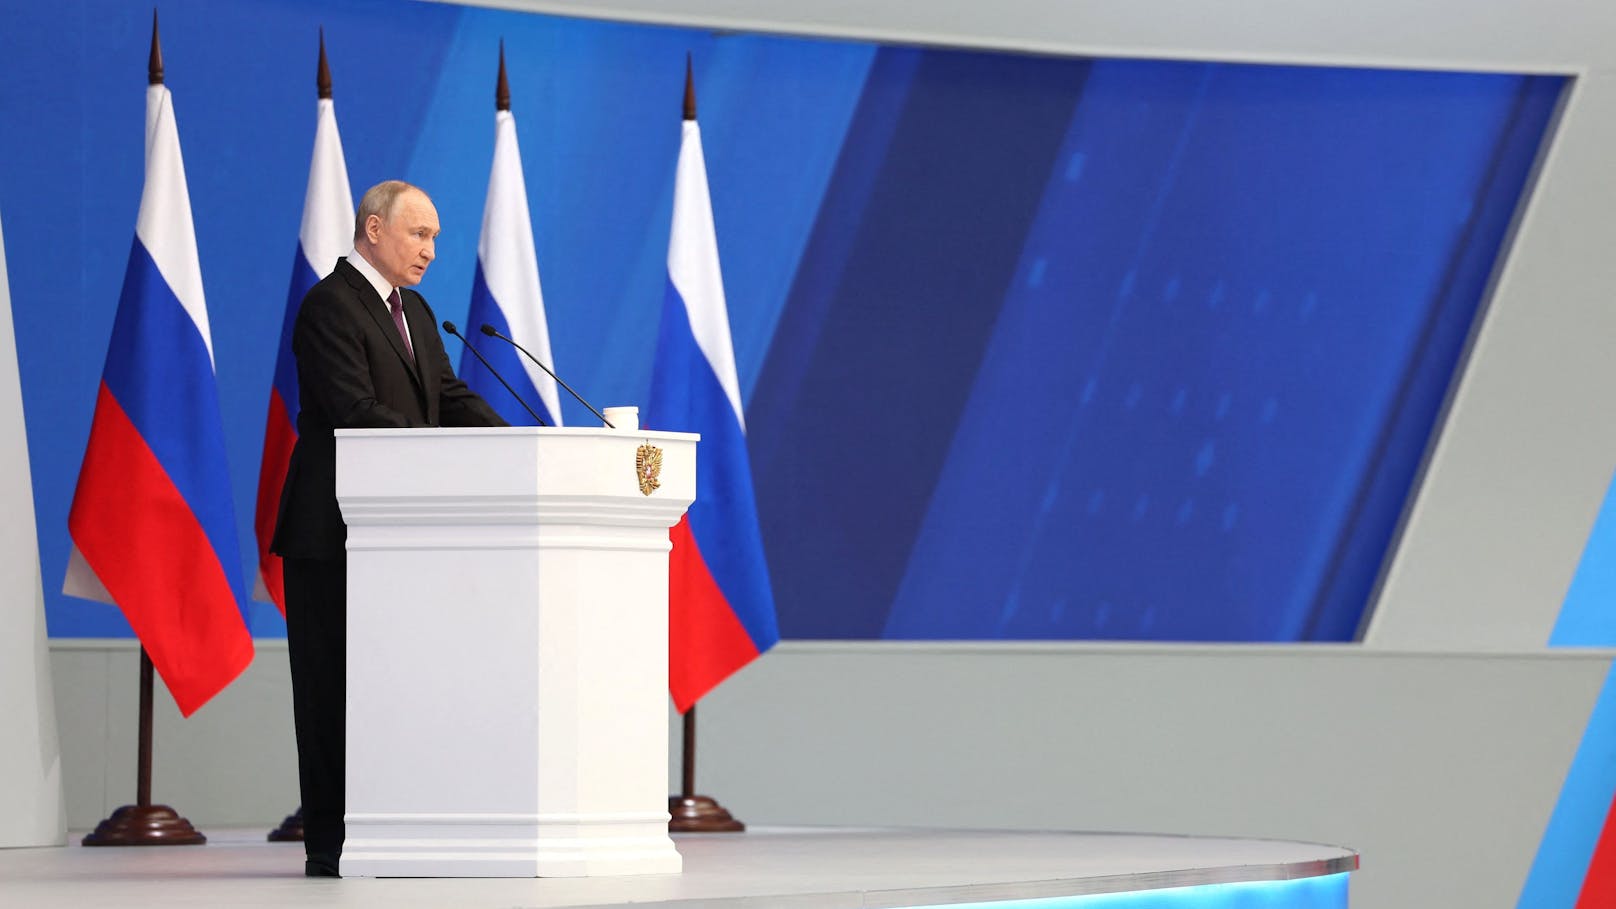 Schock-Aussage! Putin droht jetzt mit "Atomkrieg"